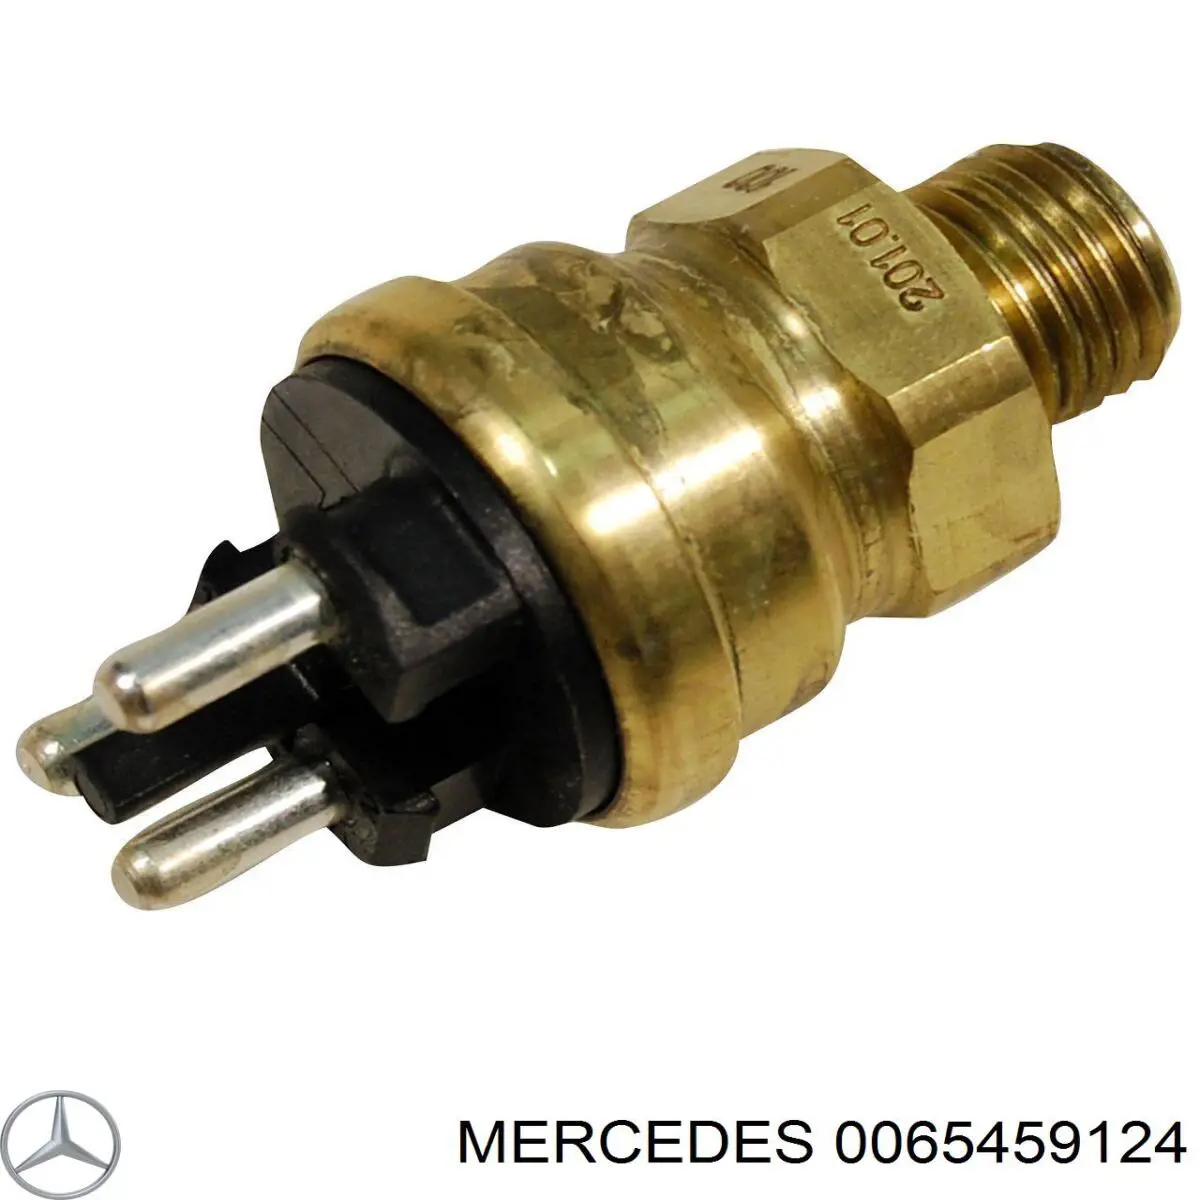 0065459124 Mercedes датчик температуры охлаждающей жидкости (включения вентилятора радиатора)